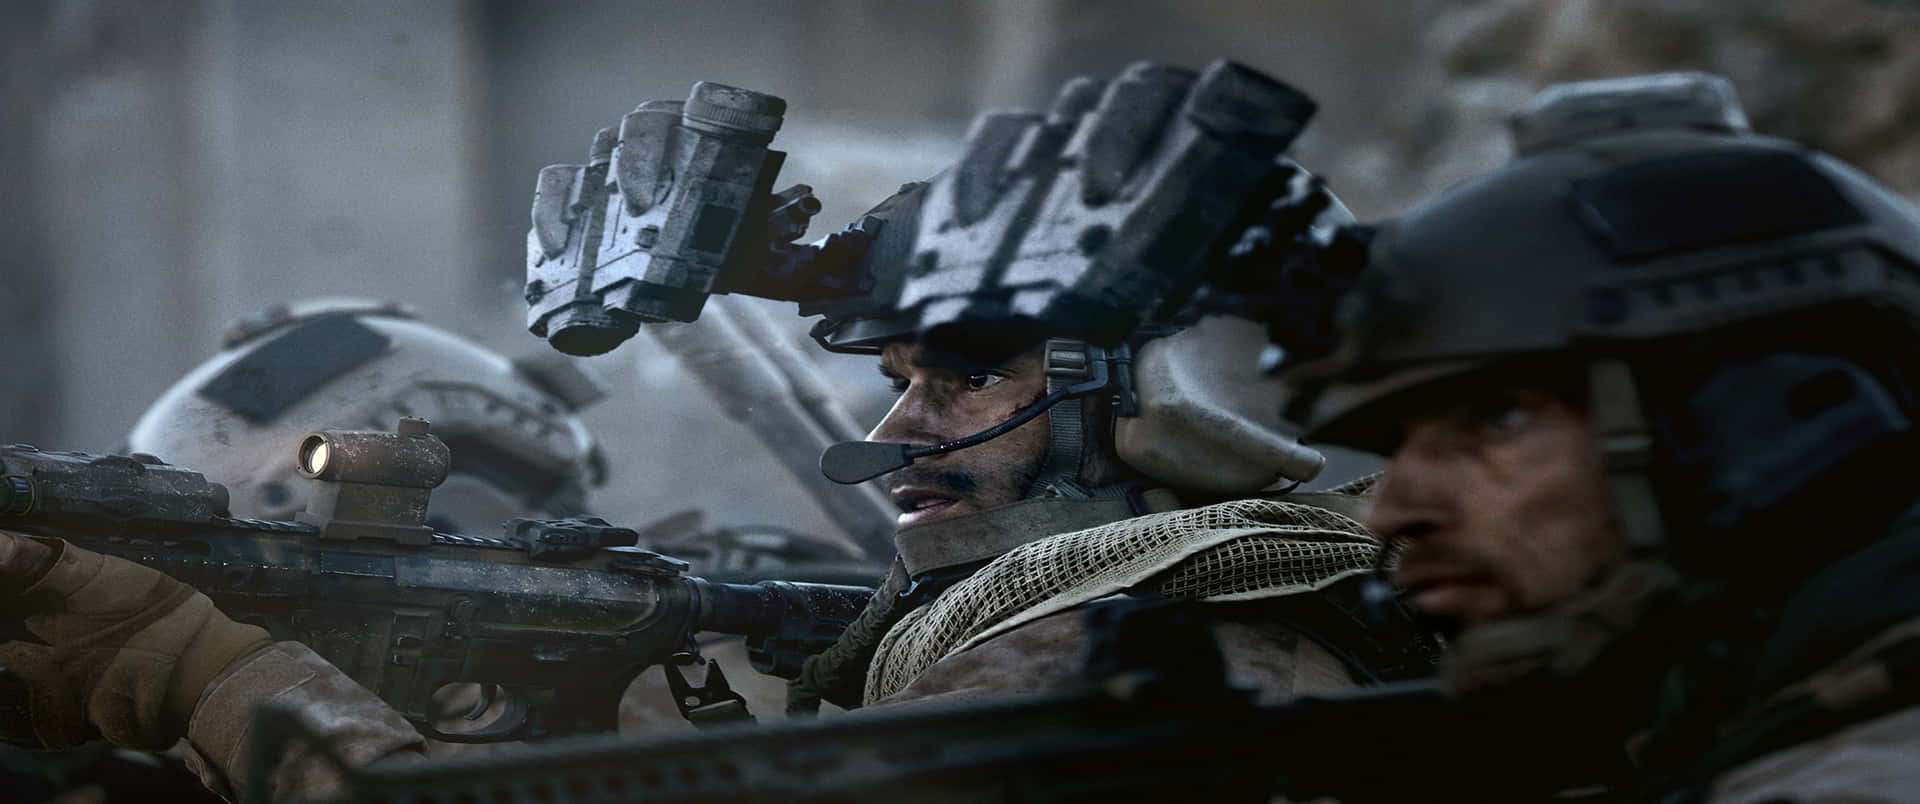 Primopiano Alex Keller 3440x1440p Sfondo Call Of Duty Modern Warfare